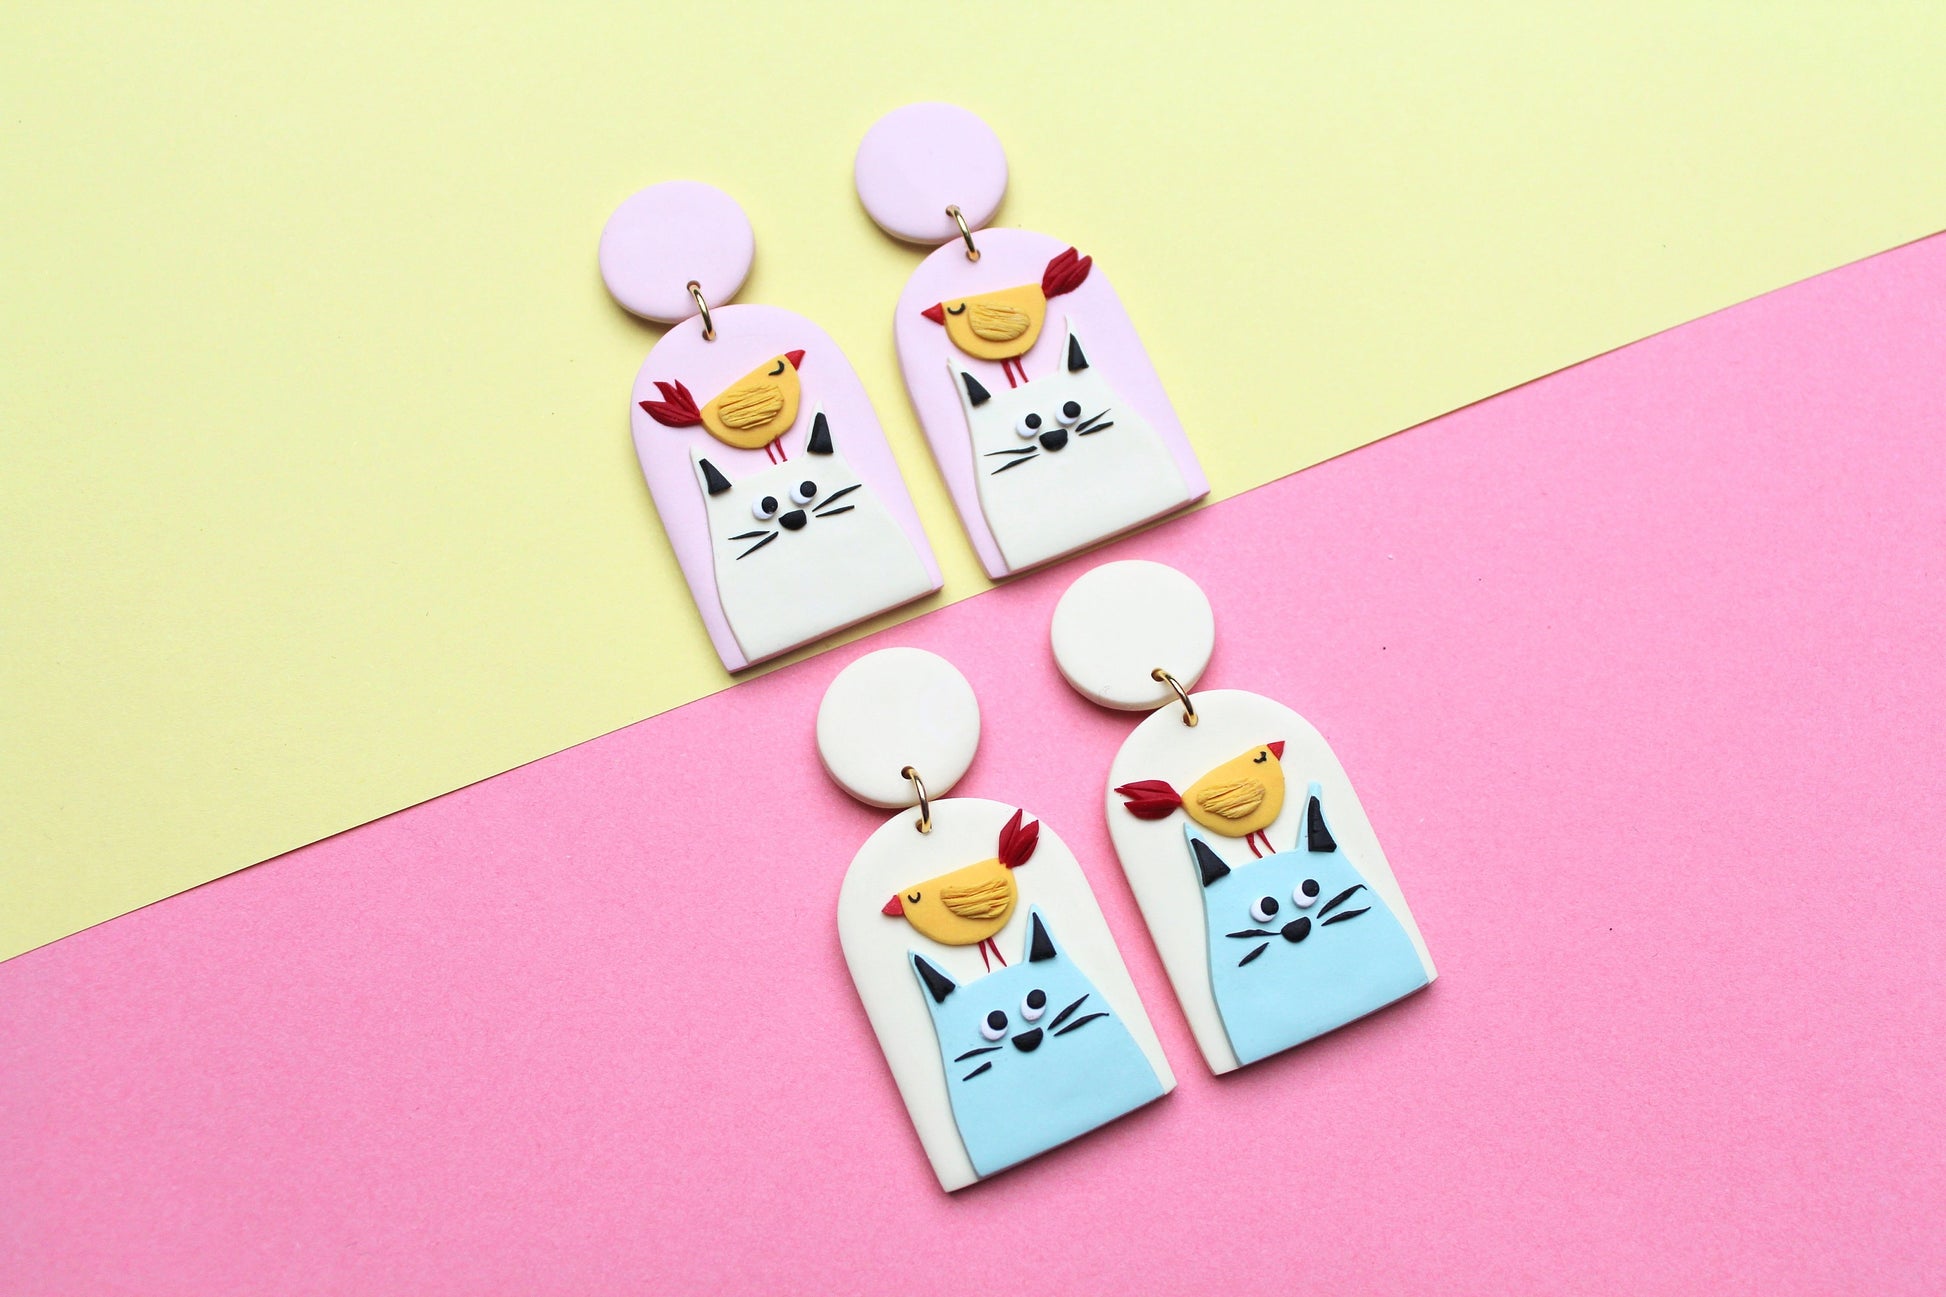 Cat Earrings, Cute Earrings, Fun Earrings, Polymer Clay Earrings, Cat Lover Gifts, Cute Cat, Art Earrings, Statement Earrings, Handmade,Gift